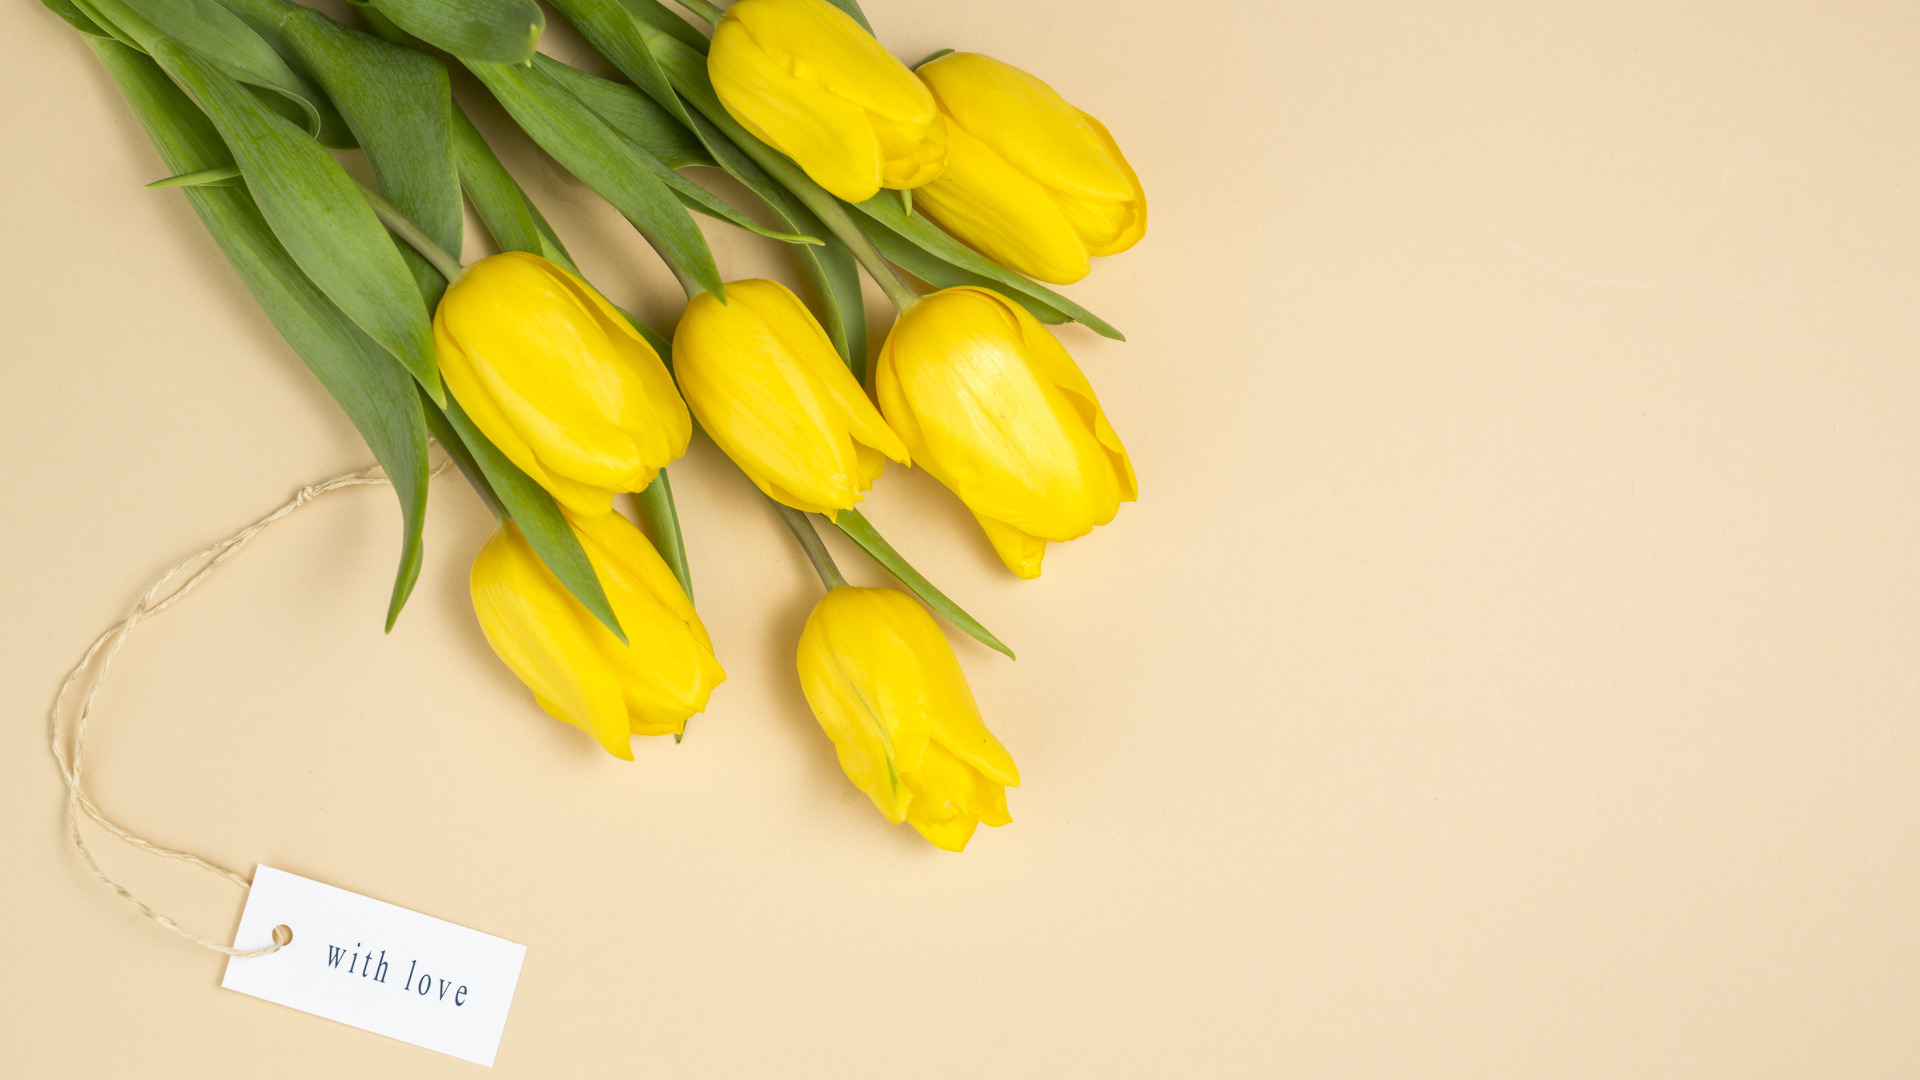 Желтые тюльпаны вестники текст. Желтые тюльпаны. Тюльпаны фон. Тюльпаны на желтом фоне. Желтые тюльпаны на белом фоне.